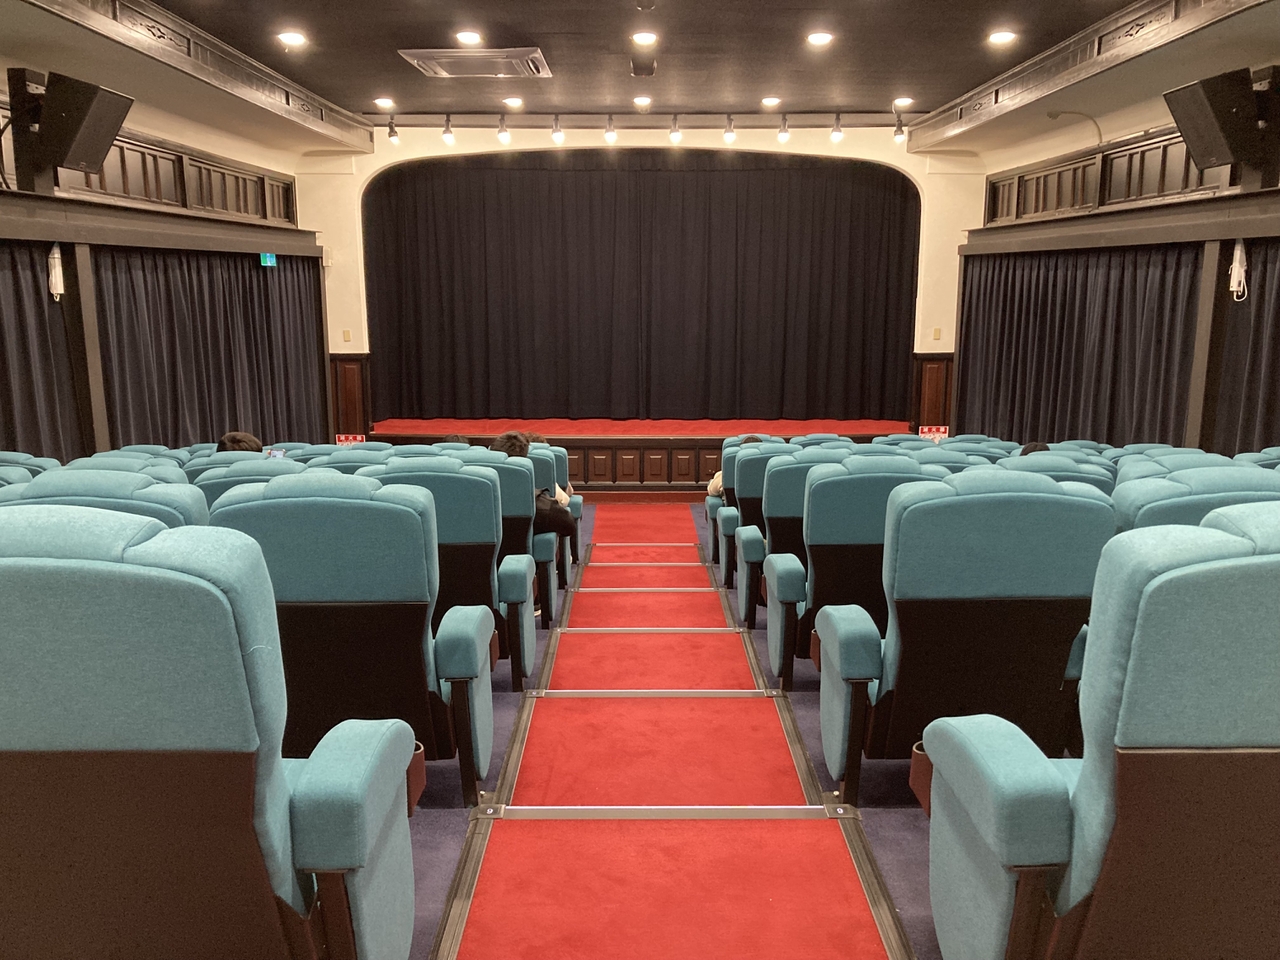 【世界の映画館めぐり】台湾・花蓮　日本の建築をリノベーション、インディペンデント映画を上映する「花蓮鉄道電影院」